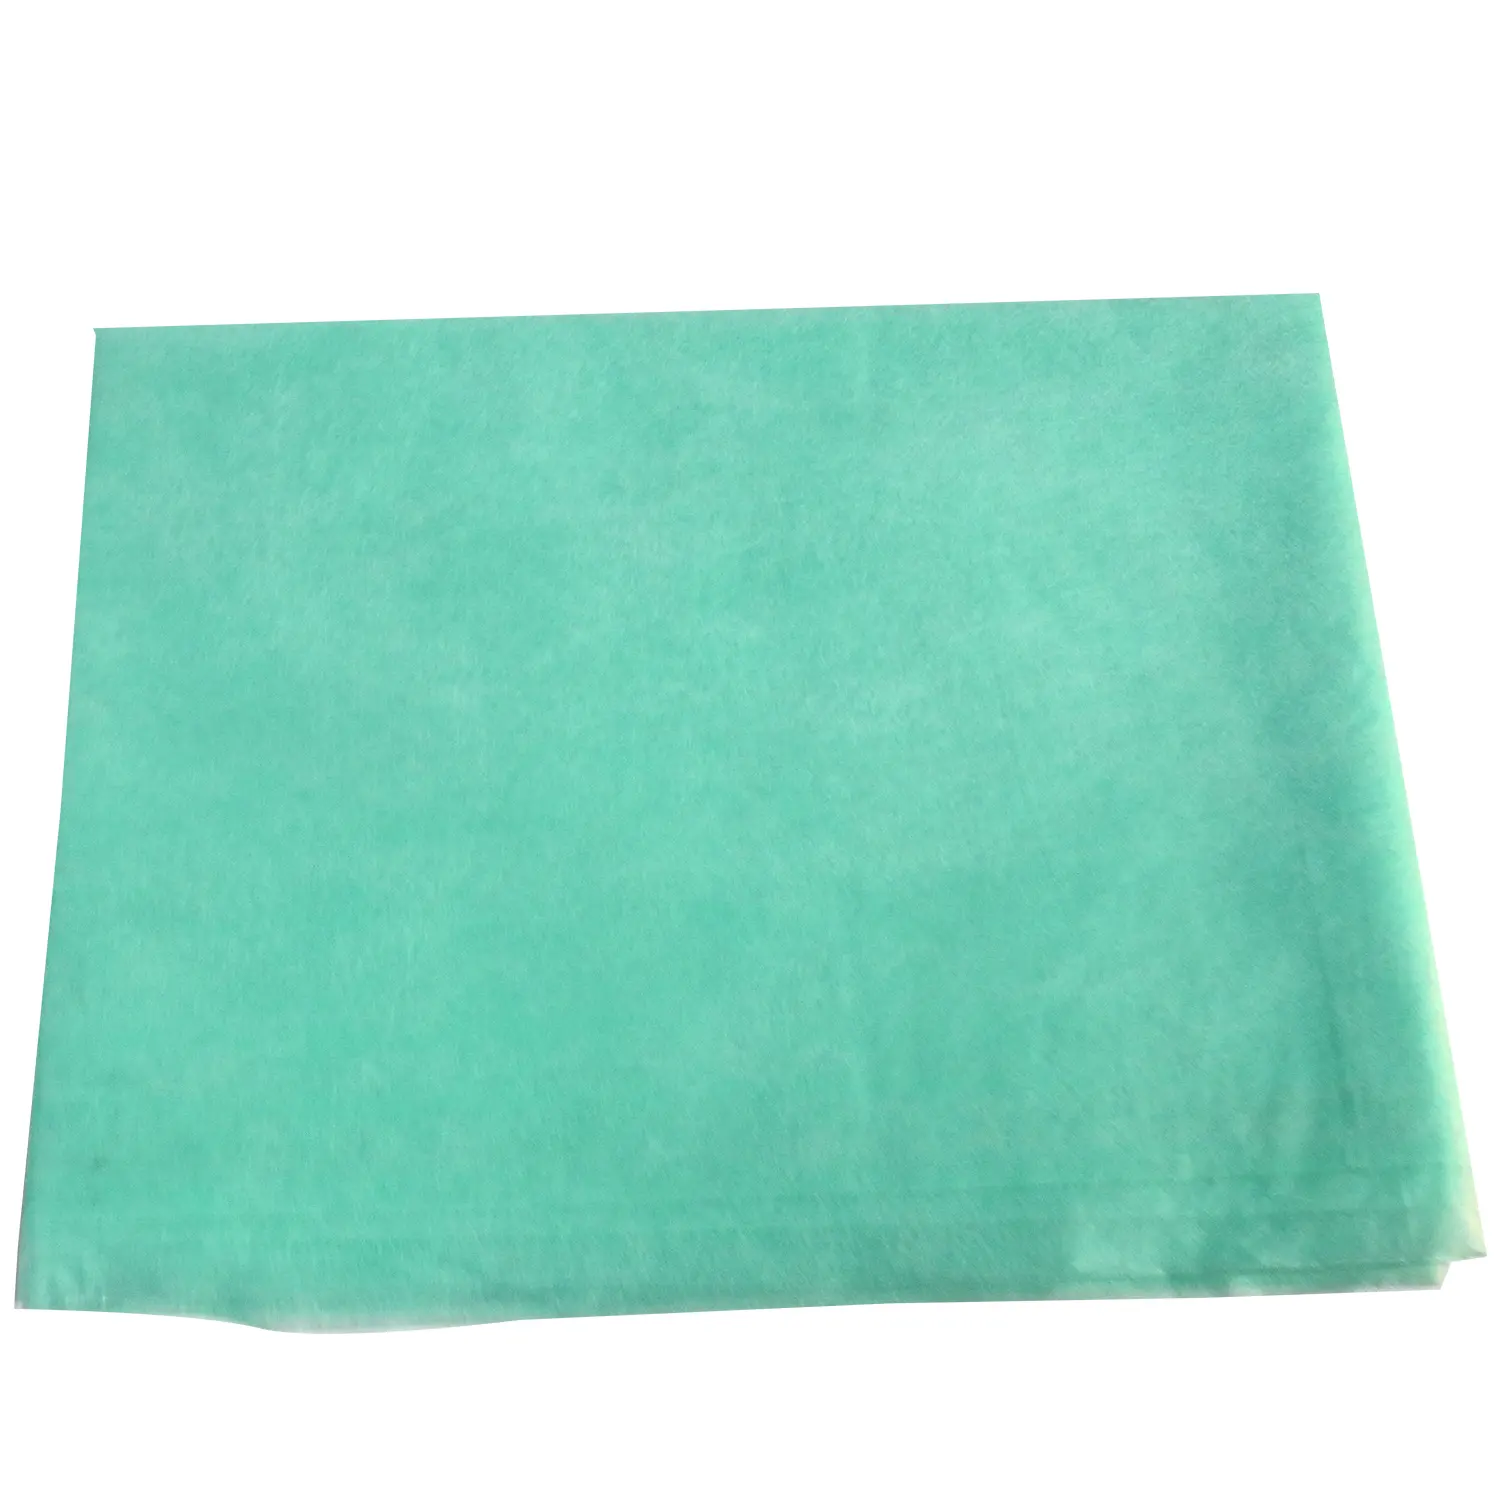 Consommables médicaux couverture de table d'examen chirurgical vert tissu imperméable poly plaine draps de lit jetables comme barrière de table d'examen